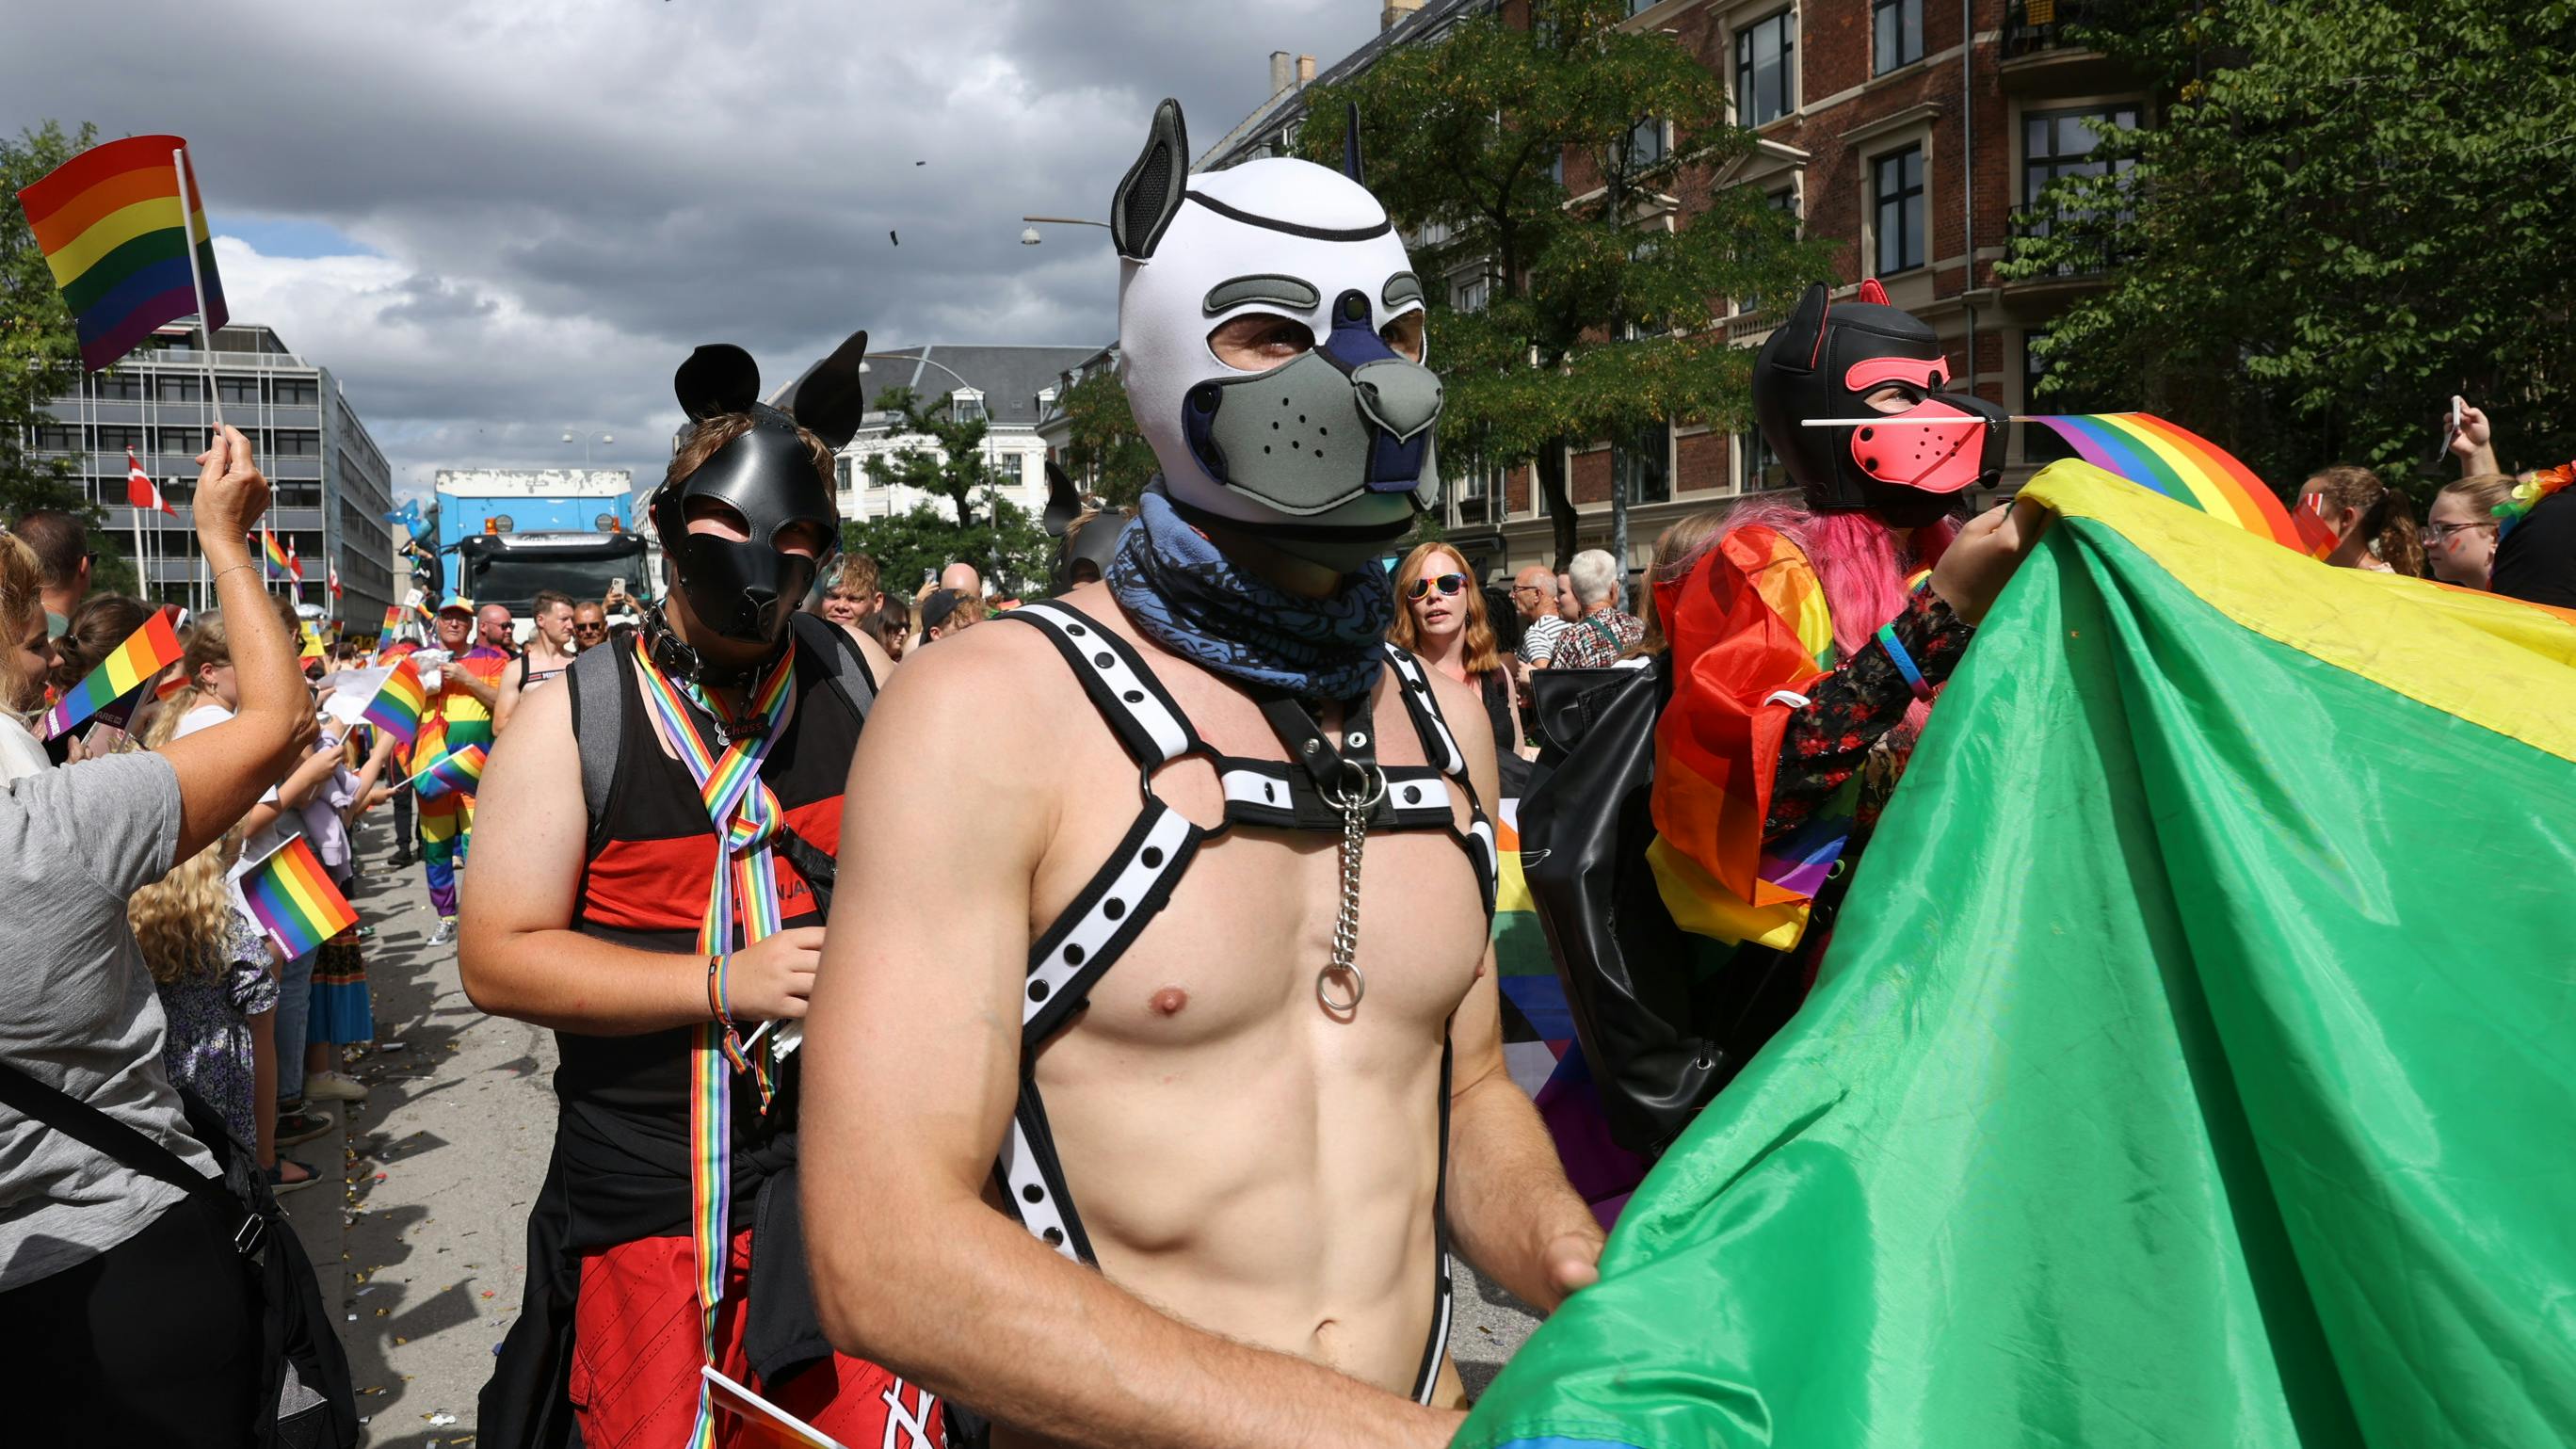 Lørdag løber Copenhagen Pride af stablen, hvor et stort optog giver store trafikale problemer.